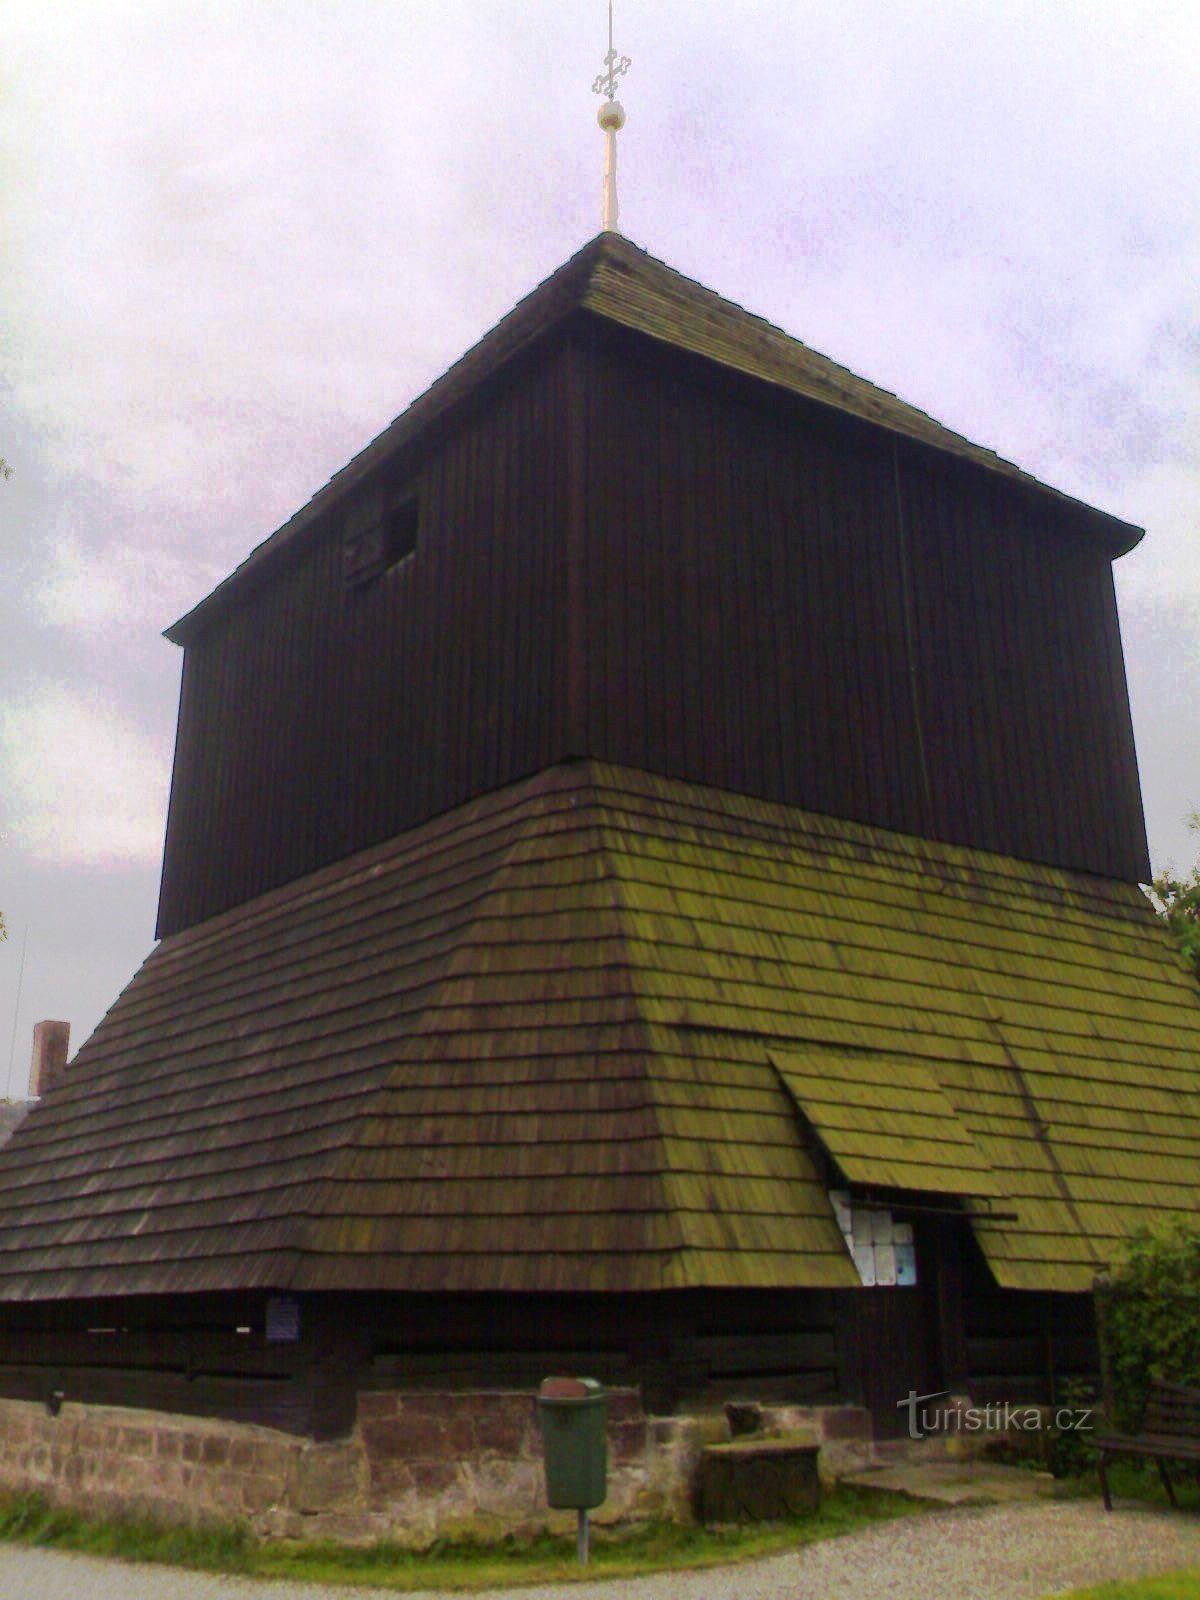 Rovensko pod Troskami - fából készült harangtorony